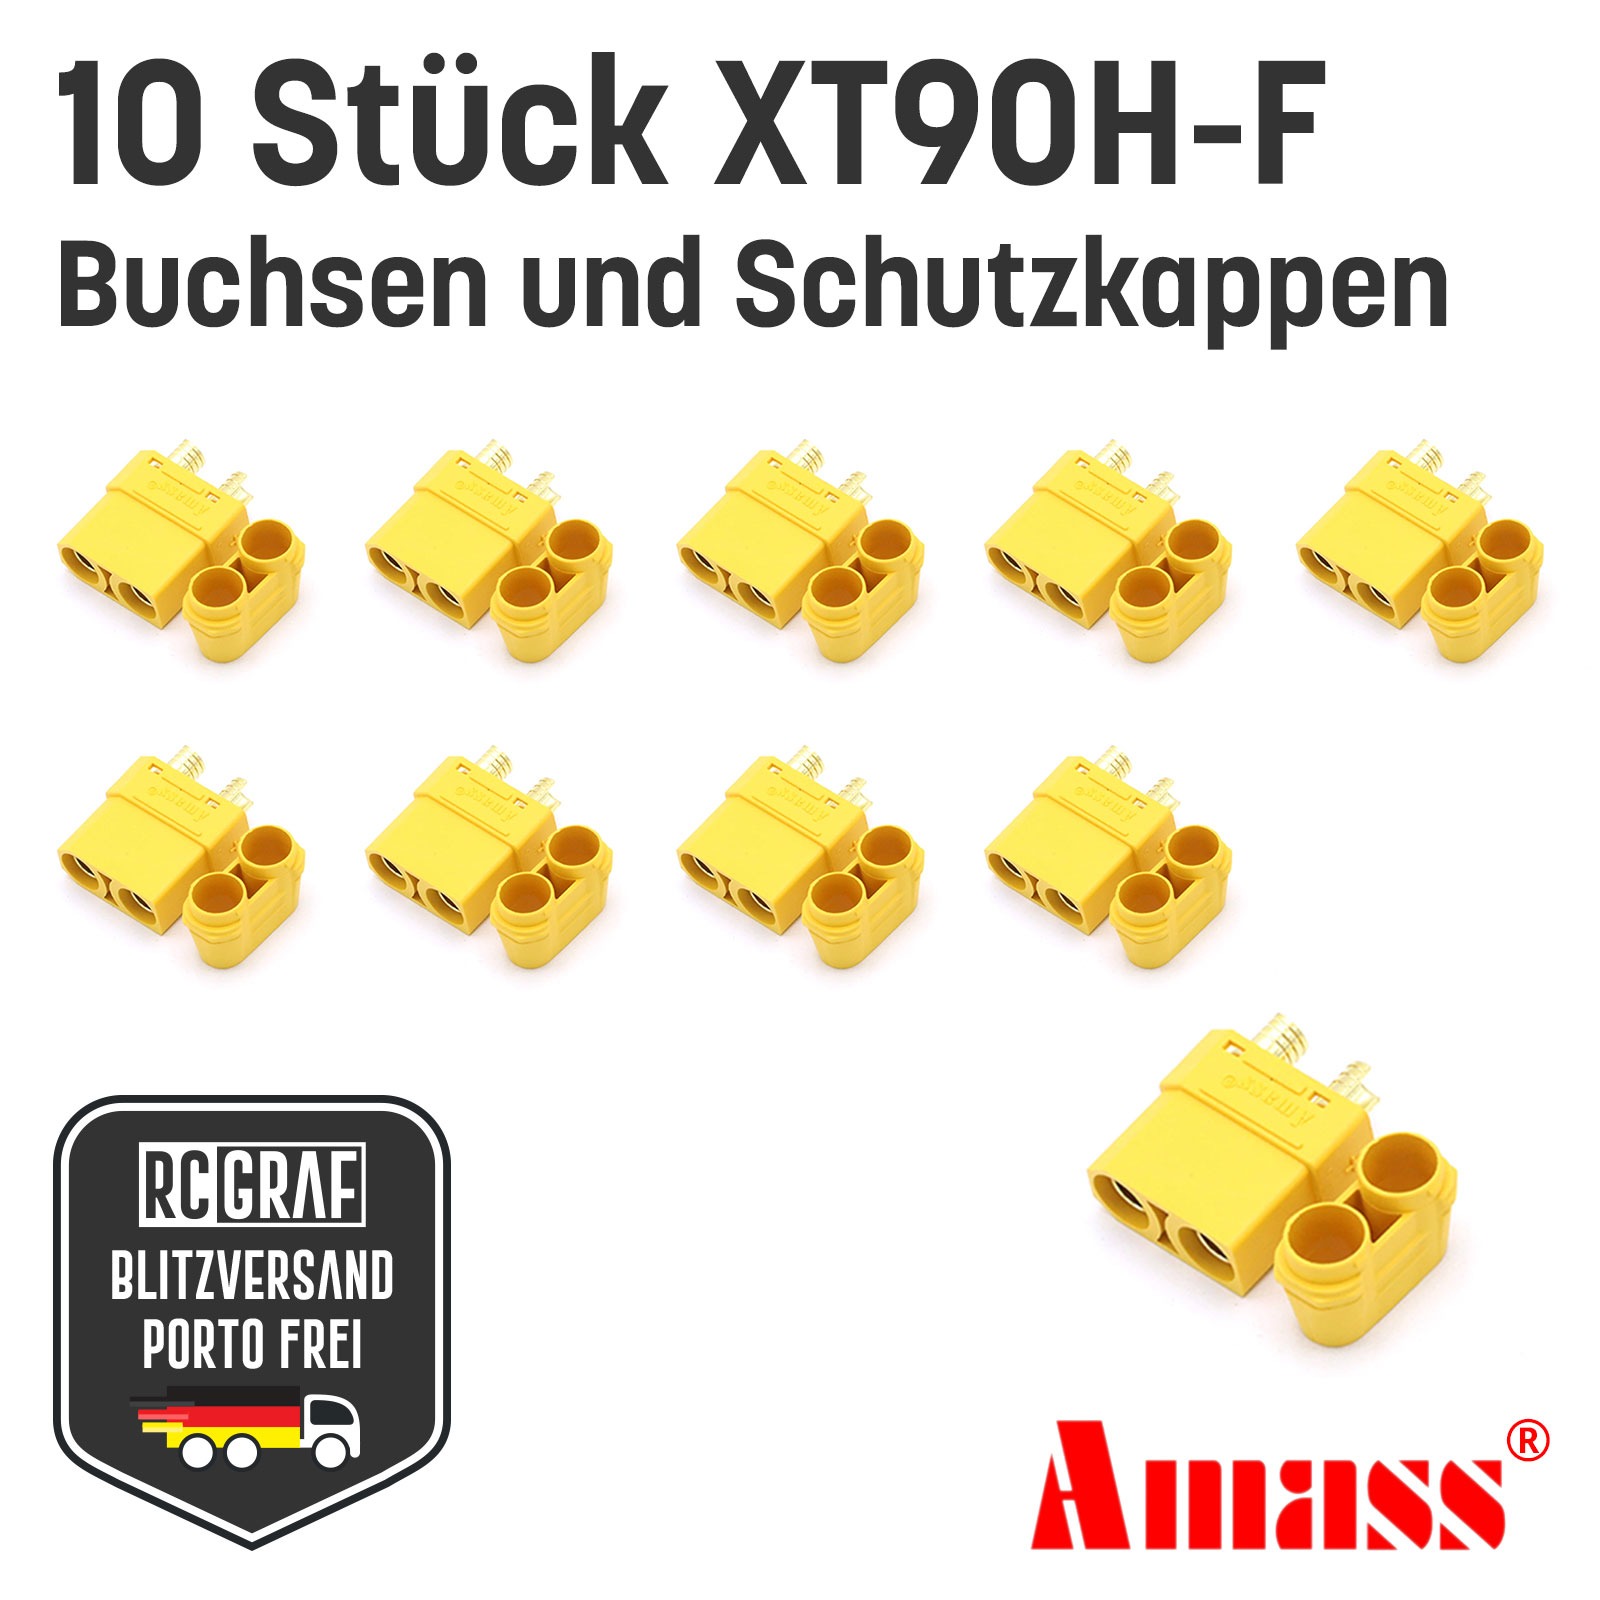 XT90H XT90 Buchsen Hochstrom Goldstecker Original Amass 2